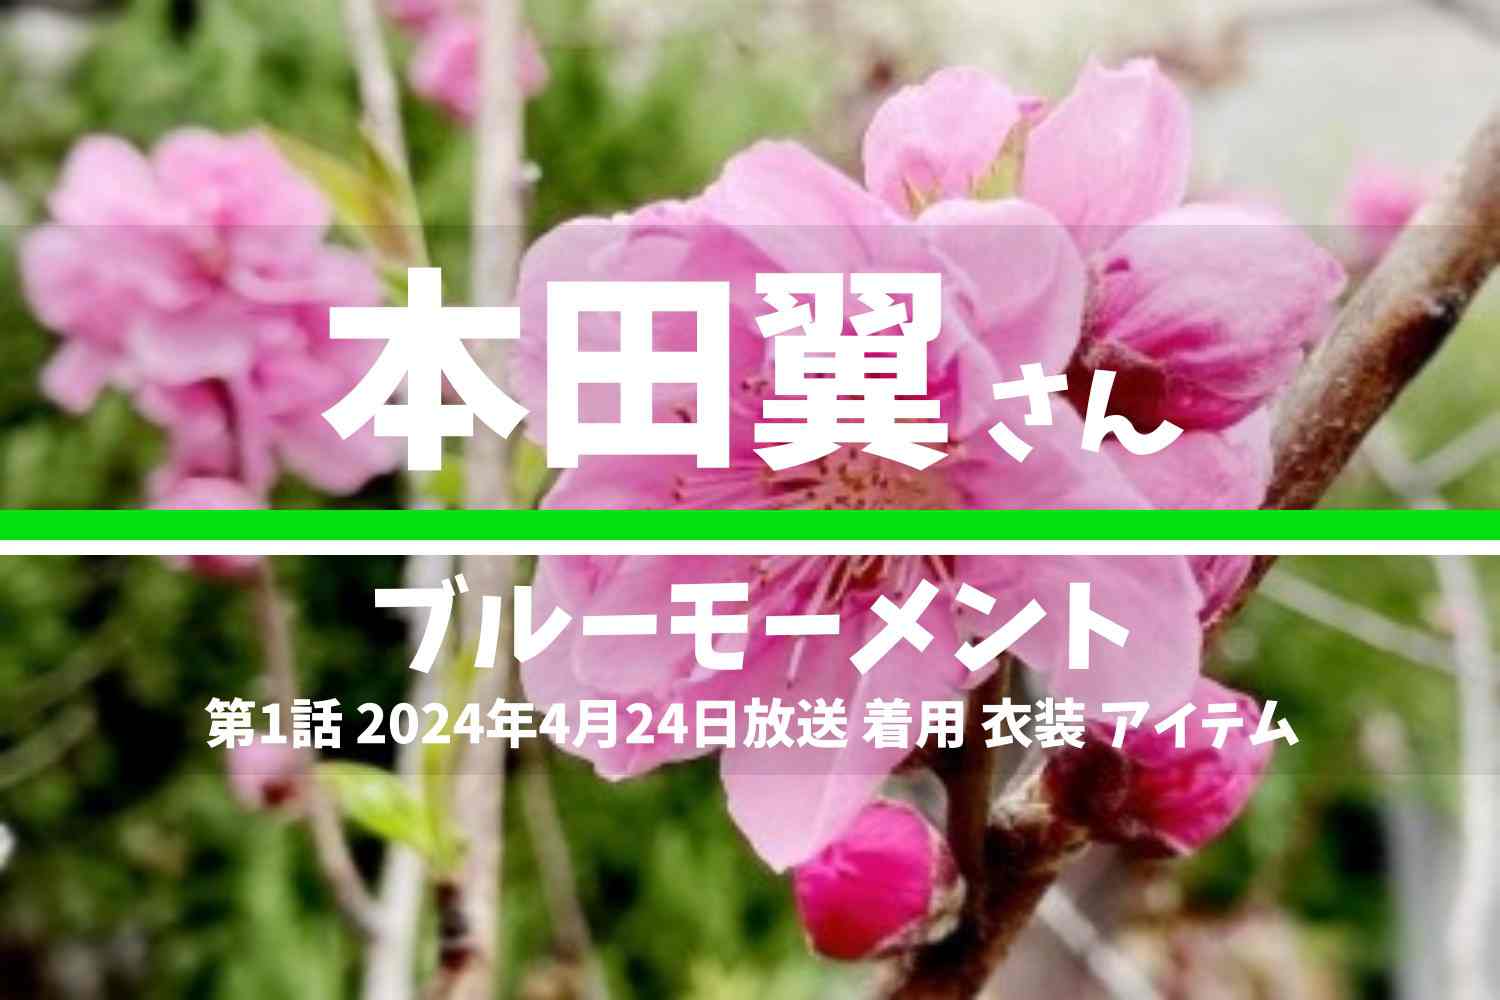 ブルーモーメント 本田翼さん テレビドラマ 衣装 2024年4月24日放送